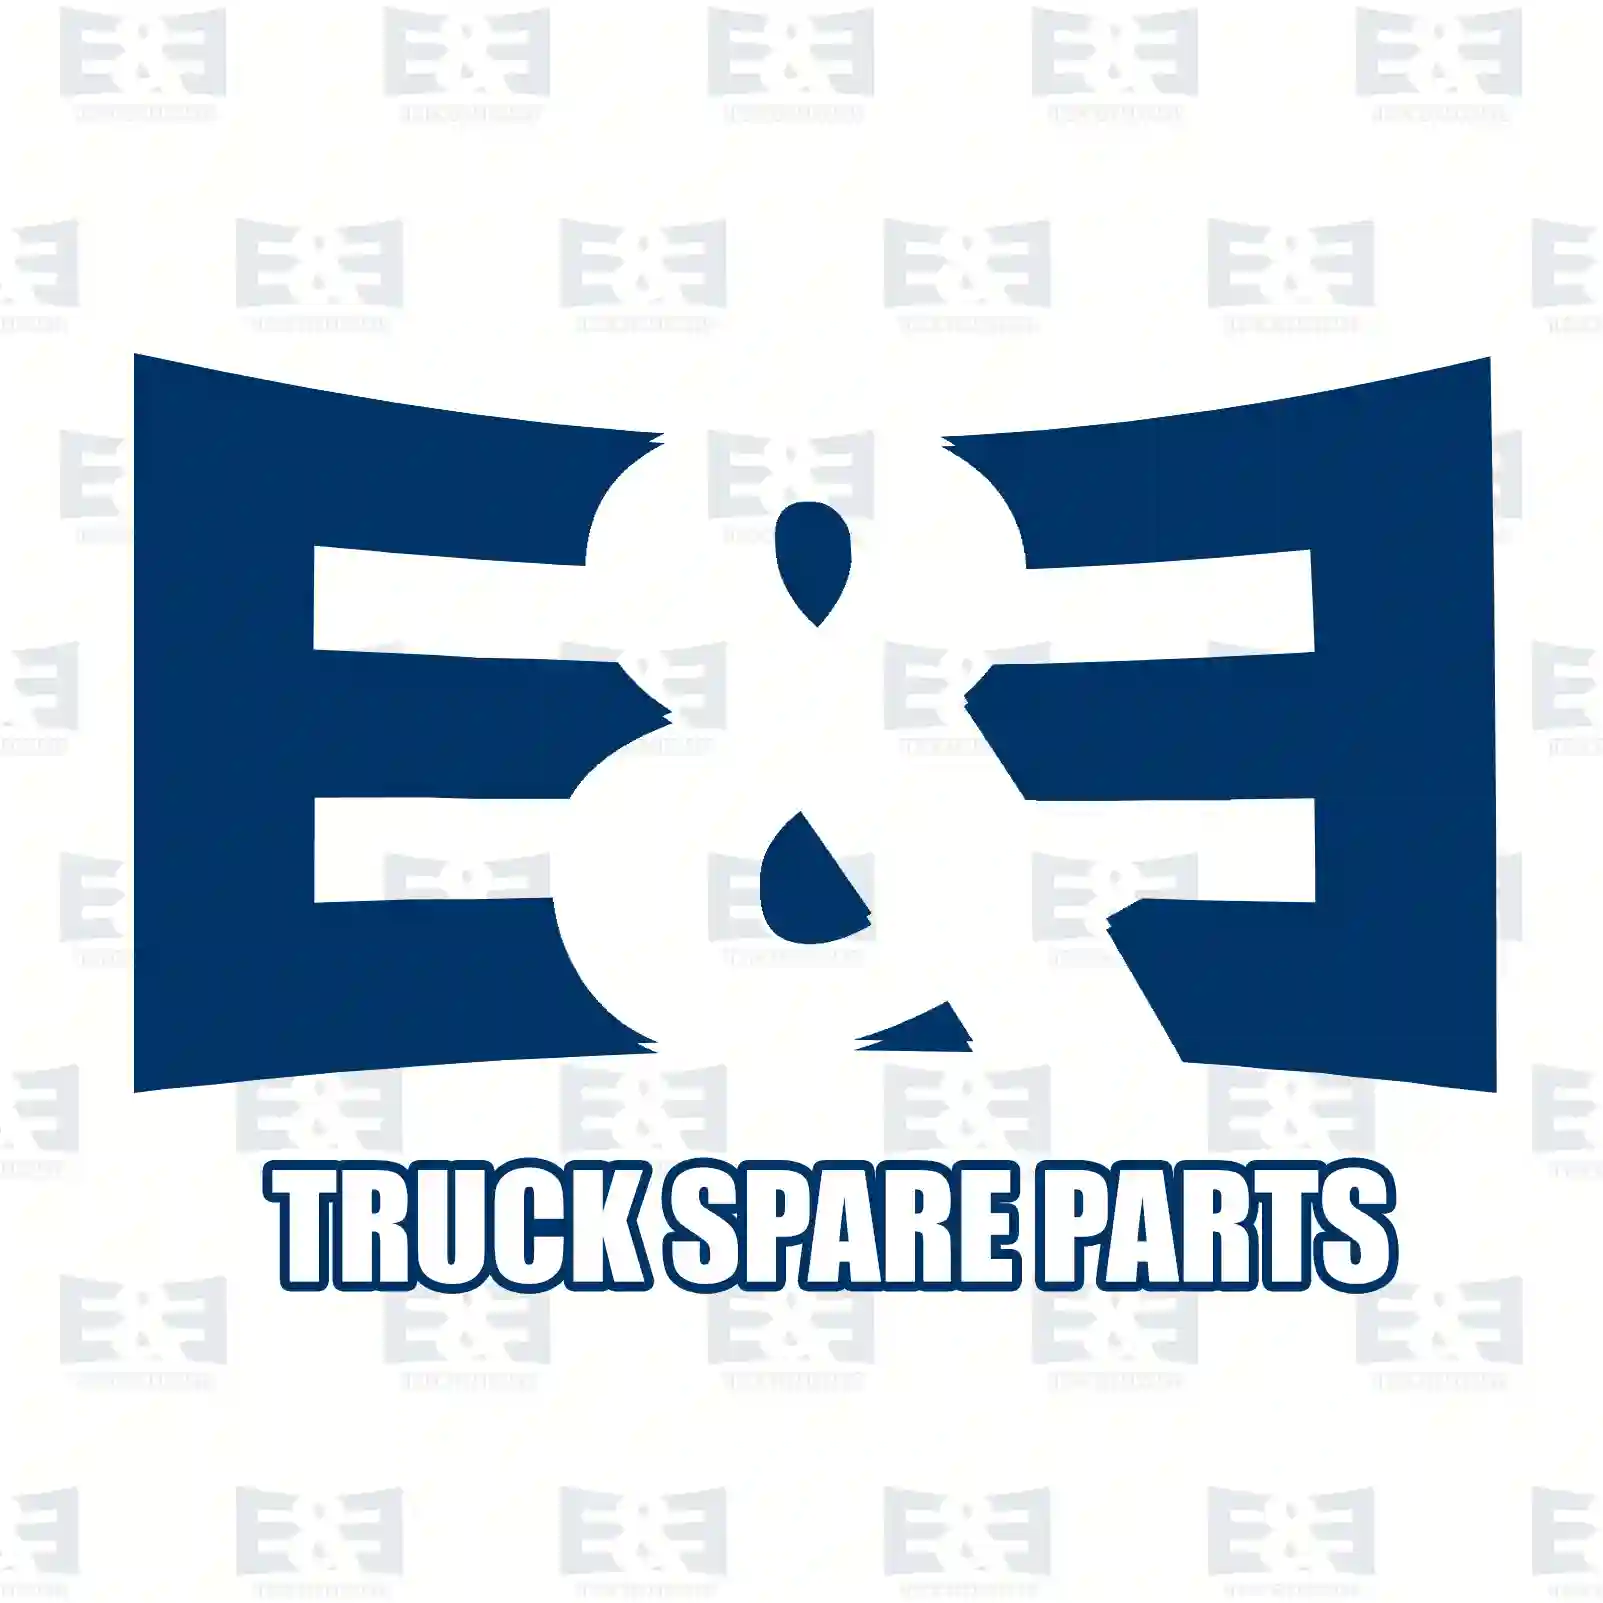 Steering damper, 2E2205172, 81437016761, 8143 ||  2E2205172 E&E Truck Spare Parts | Truck Spare Parts, Auotomotive Spare Parts Steering damper, 2E2205172, 81437016761, 8143 ||  2E2205172 E&E Truck Spare Parts | Truck Spare Parts, Auotomotive Spare Parts